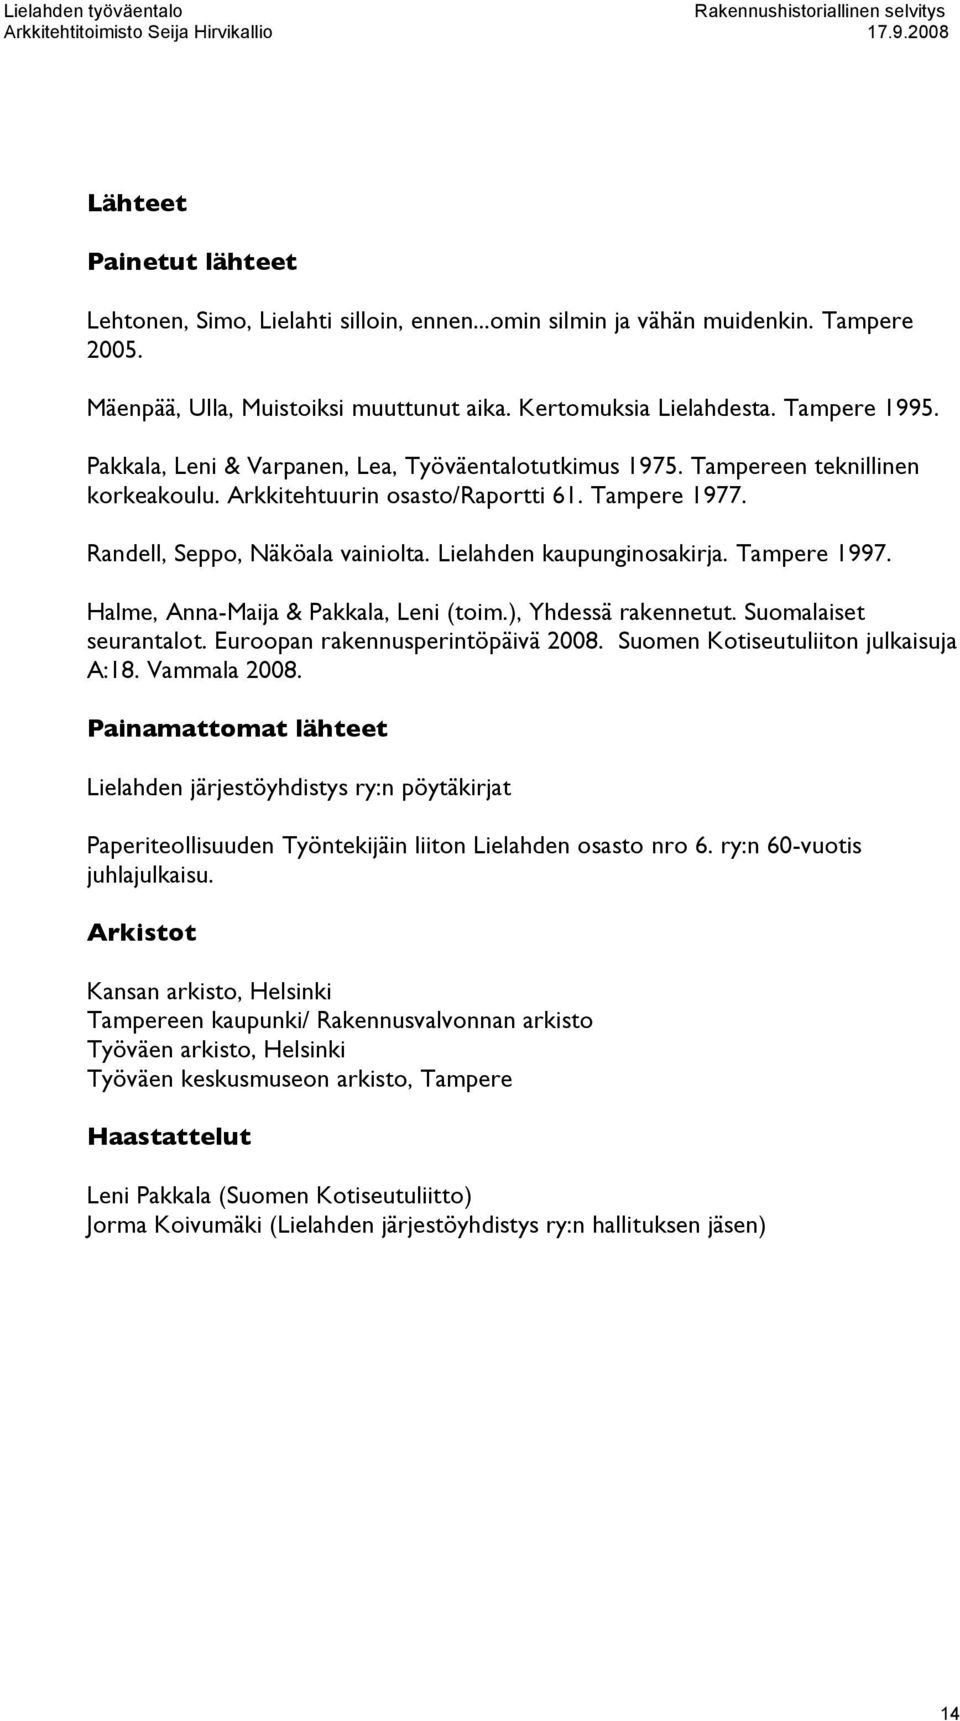 Lielahden kaupunginosakirja. Tampere 1997. Halme, Anna-Maija & Pakkala, Leni (toim.), Yhdessä rakennetut. Suomalaiset seurantalot. Euroopan rakennusperintöpäivä 2008.